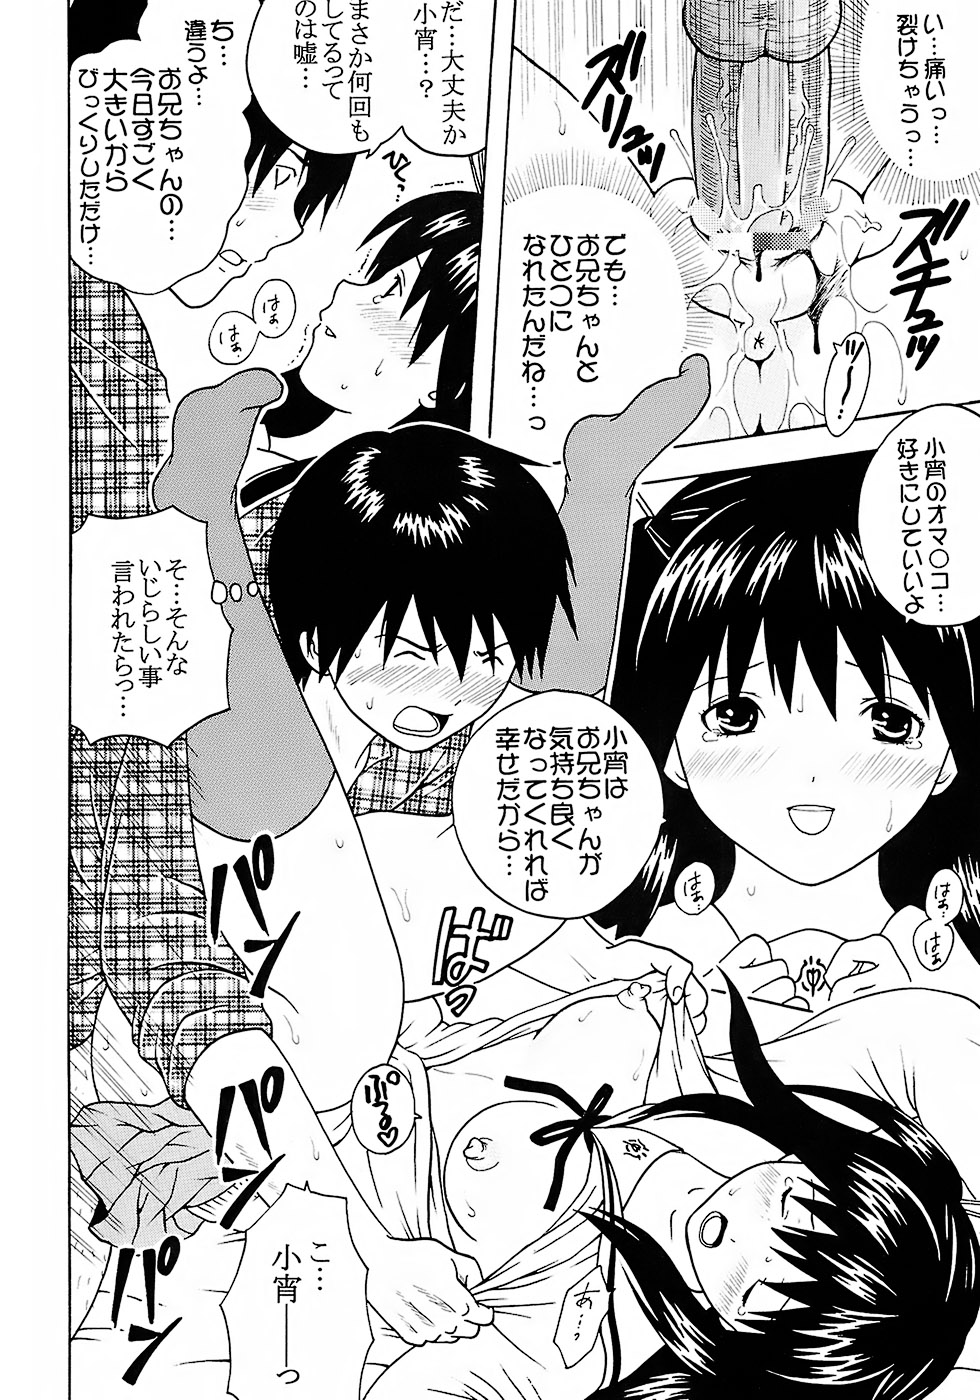 (C73) [St. Rio (Katana Kaji, Kitty, Purin)] Chitsui Gentei Nakadashi Limited vol.2 (Hatsukoi Gentei) page 29 full